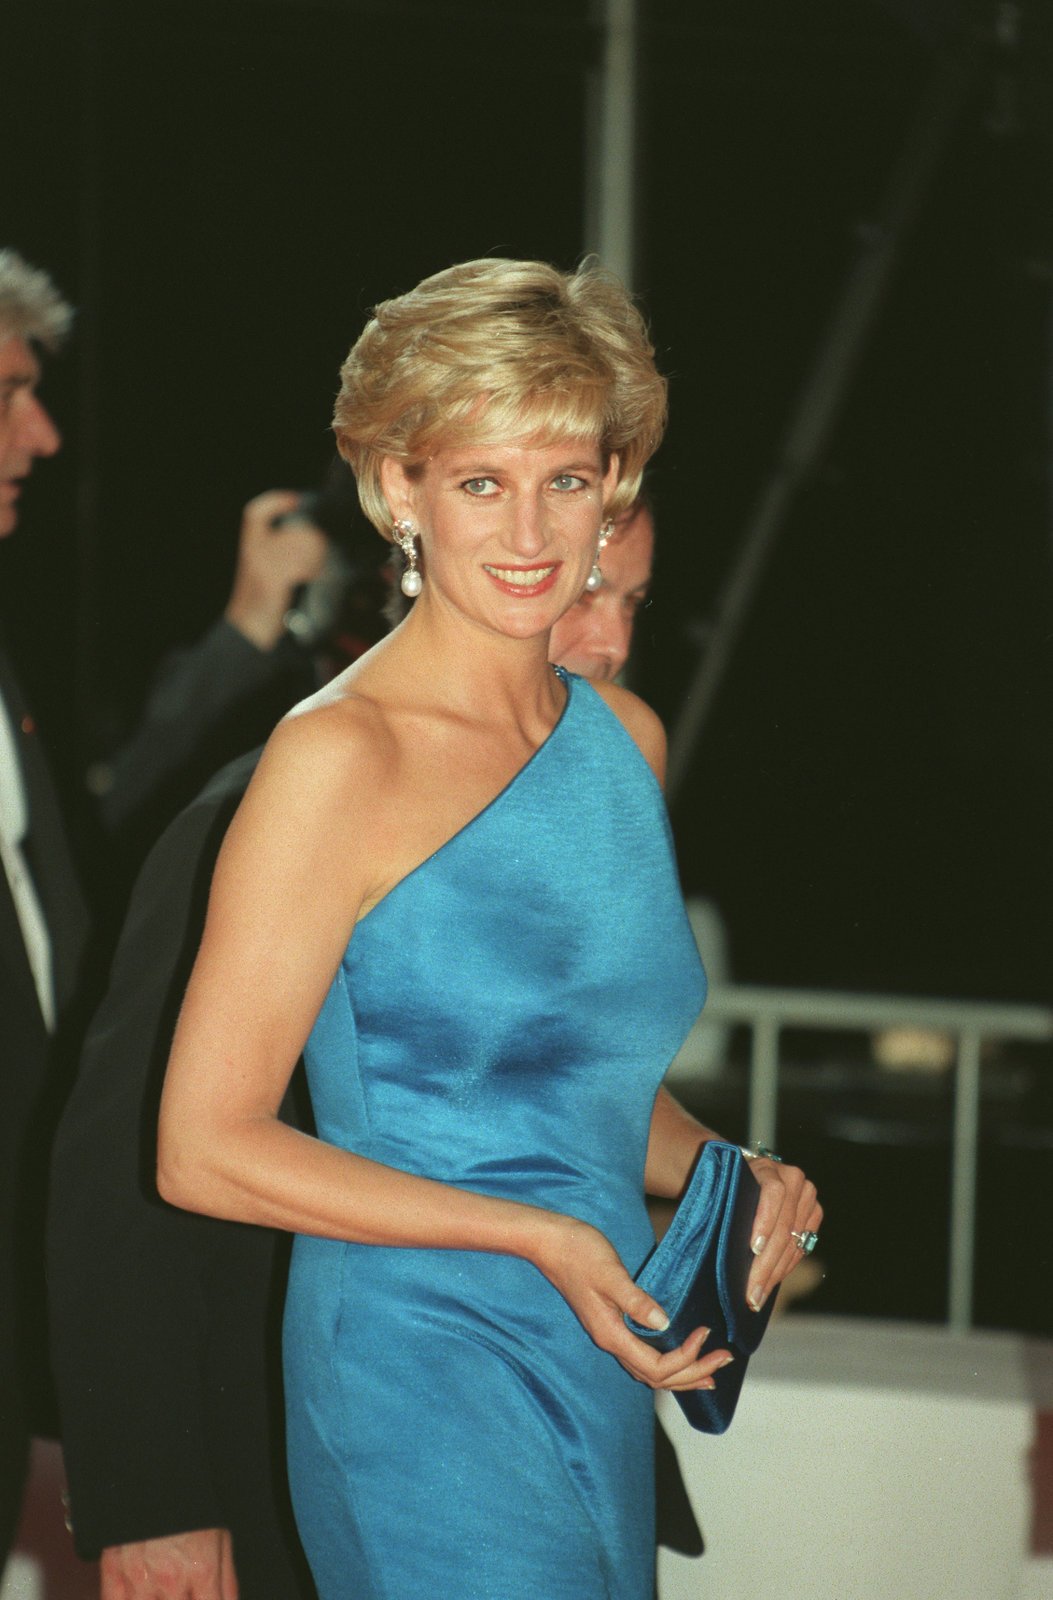 Princezna Diana byla nejen krásná, ale měla i dobré srdce. Proto její smrt oplakal doslova celý svět.